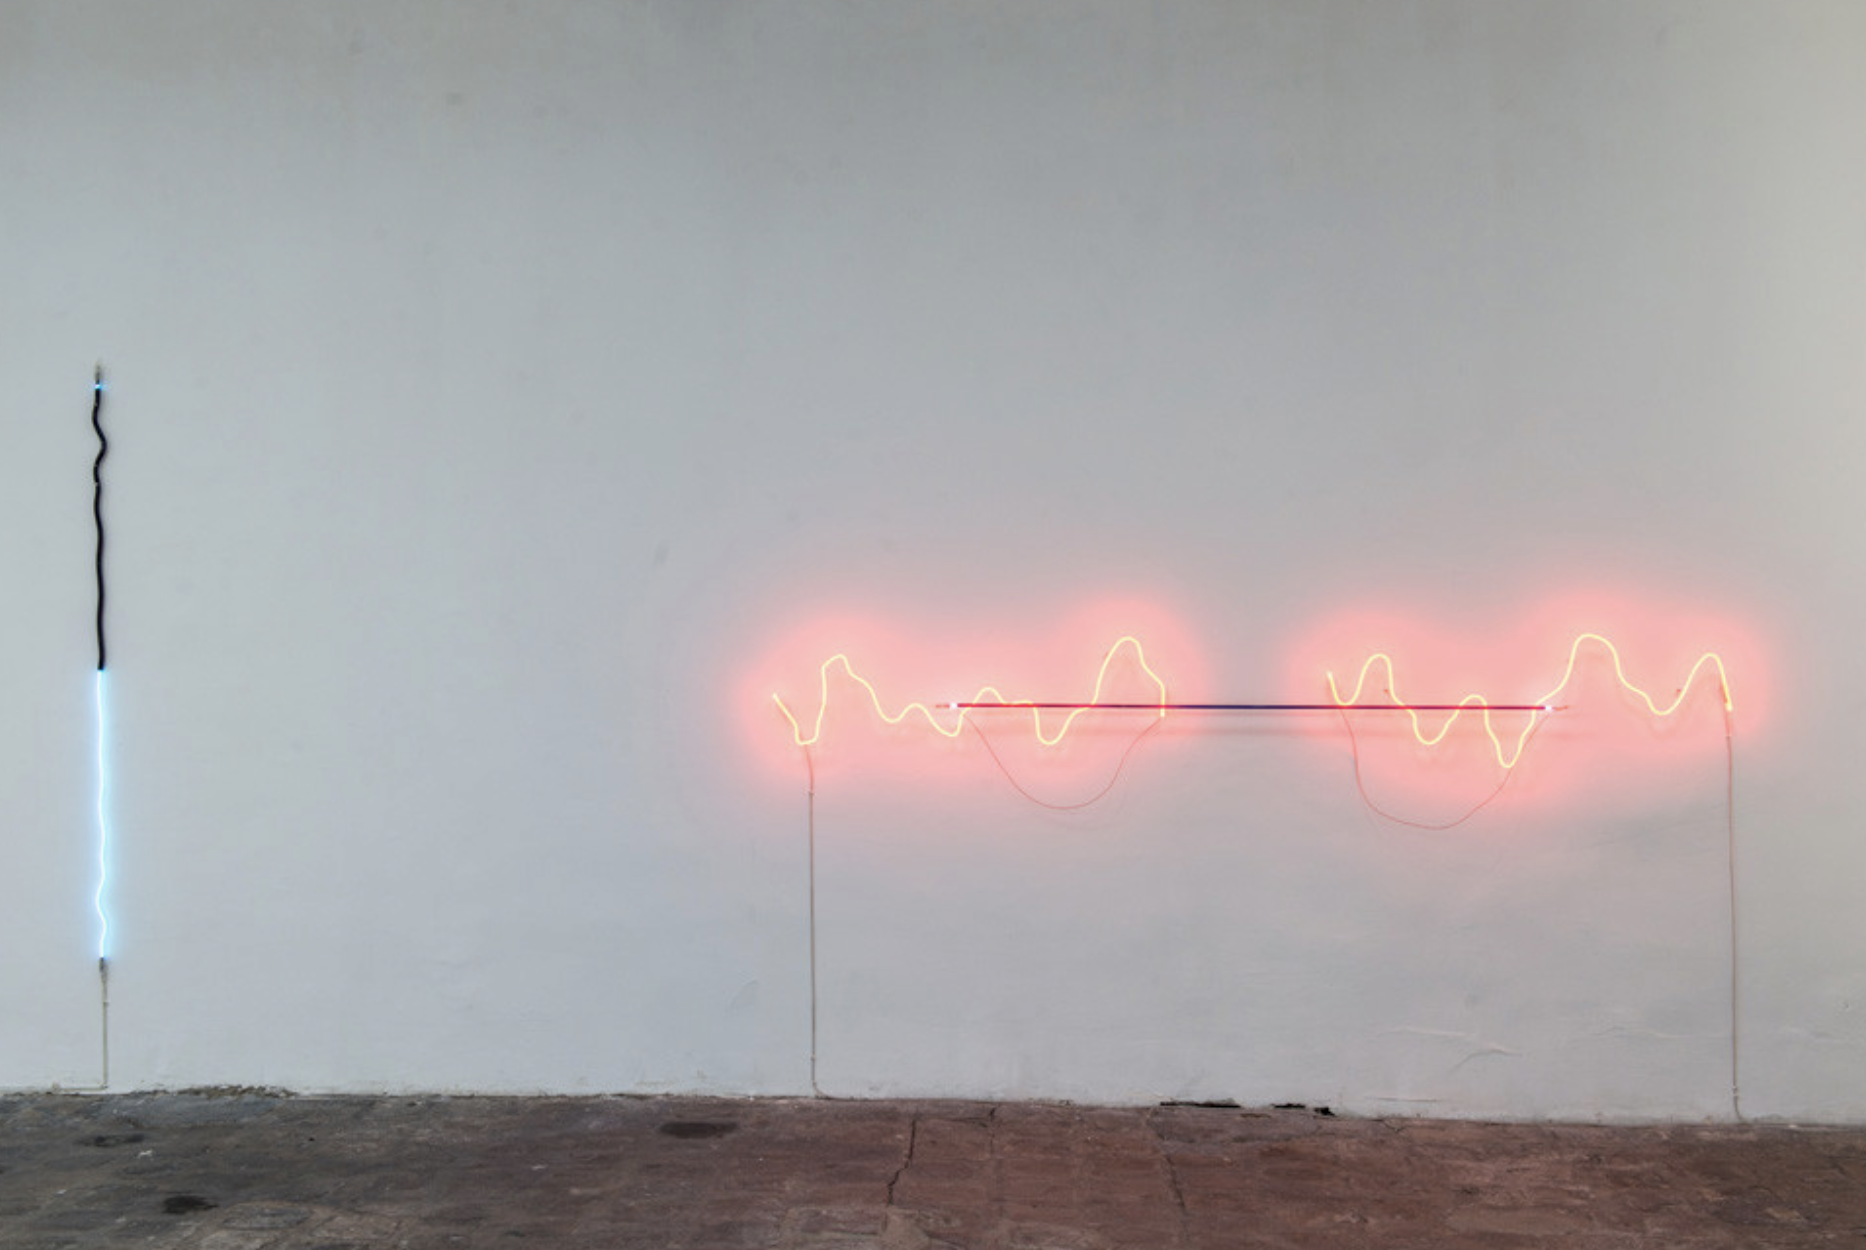 Jan van Munster, à gauche, « Between Plus and Minus », 2012, Argon, verre bleu et noir, transformateur,190 cm.    à droite, « Brainwave (Ratio) », 2008, Néon, verre rouge et noir, transformateur, 280 cm. Courtesy de l’artiste.